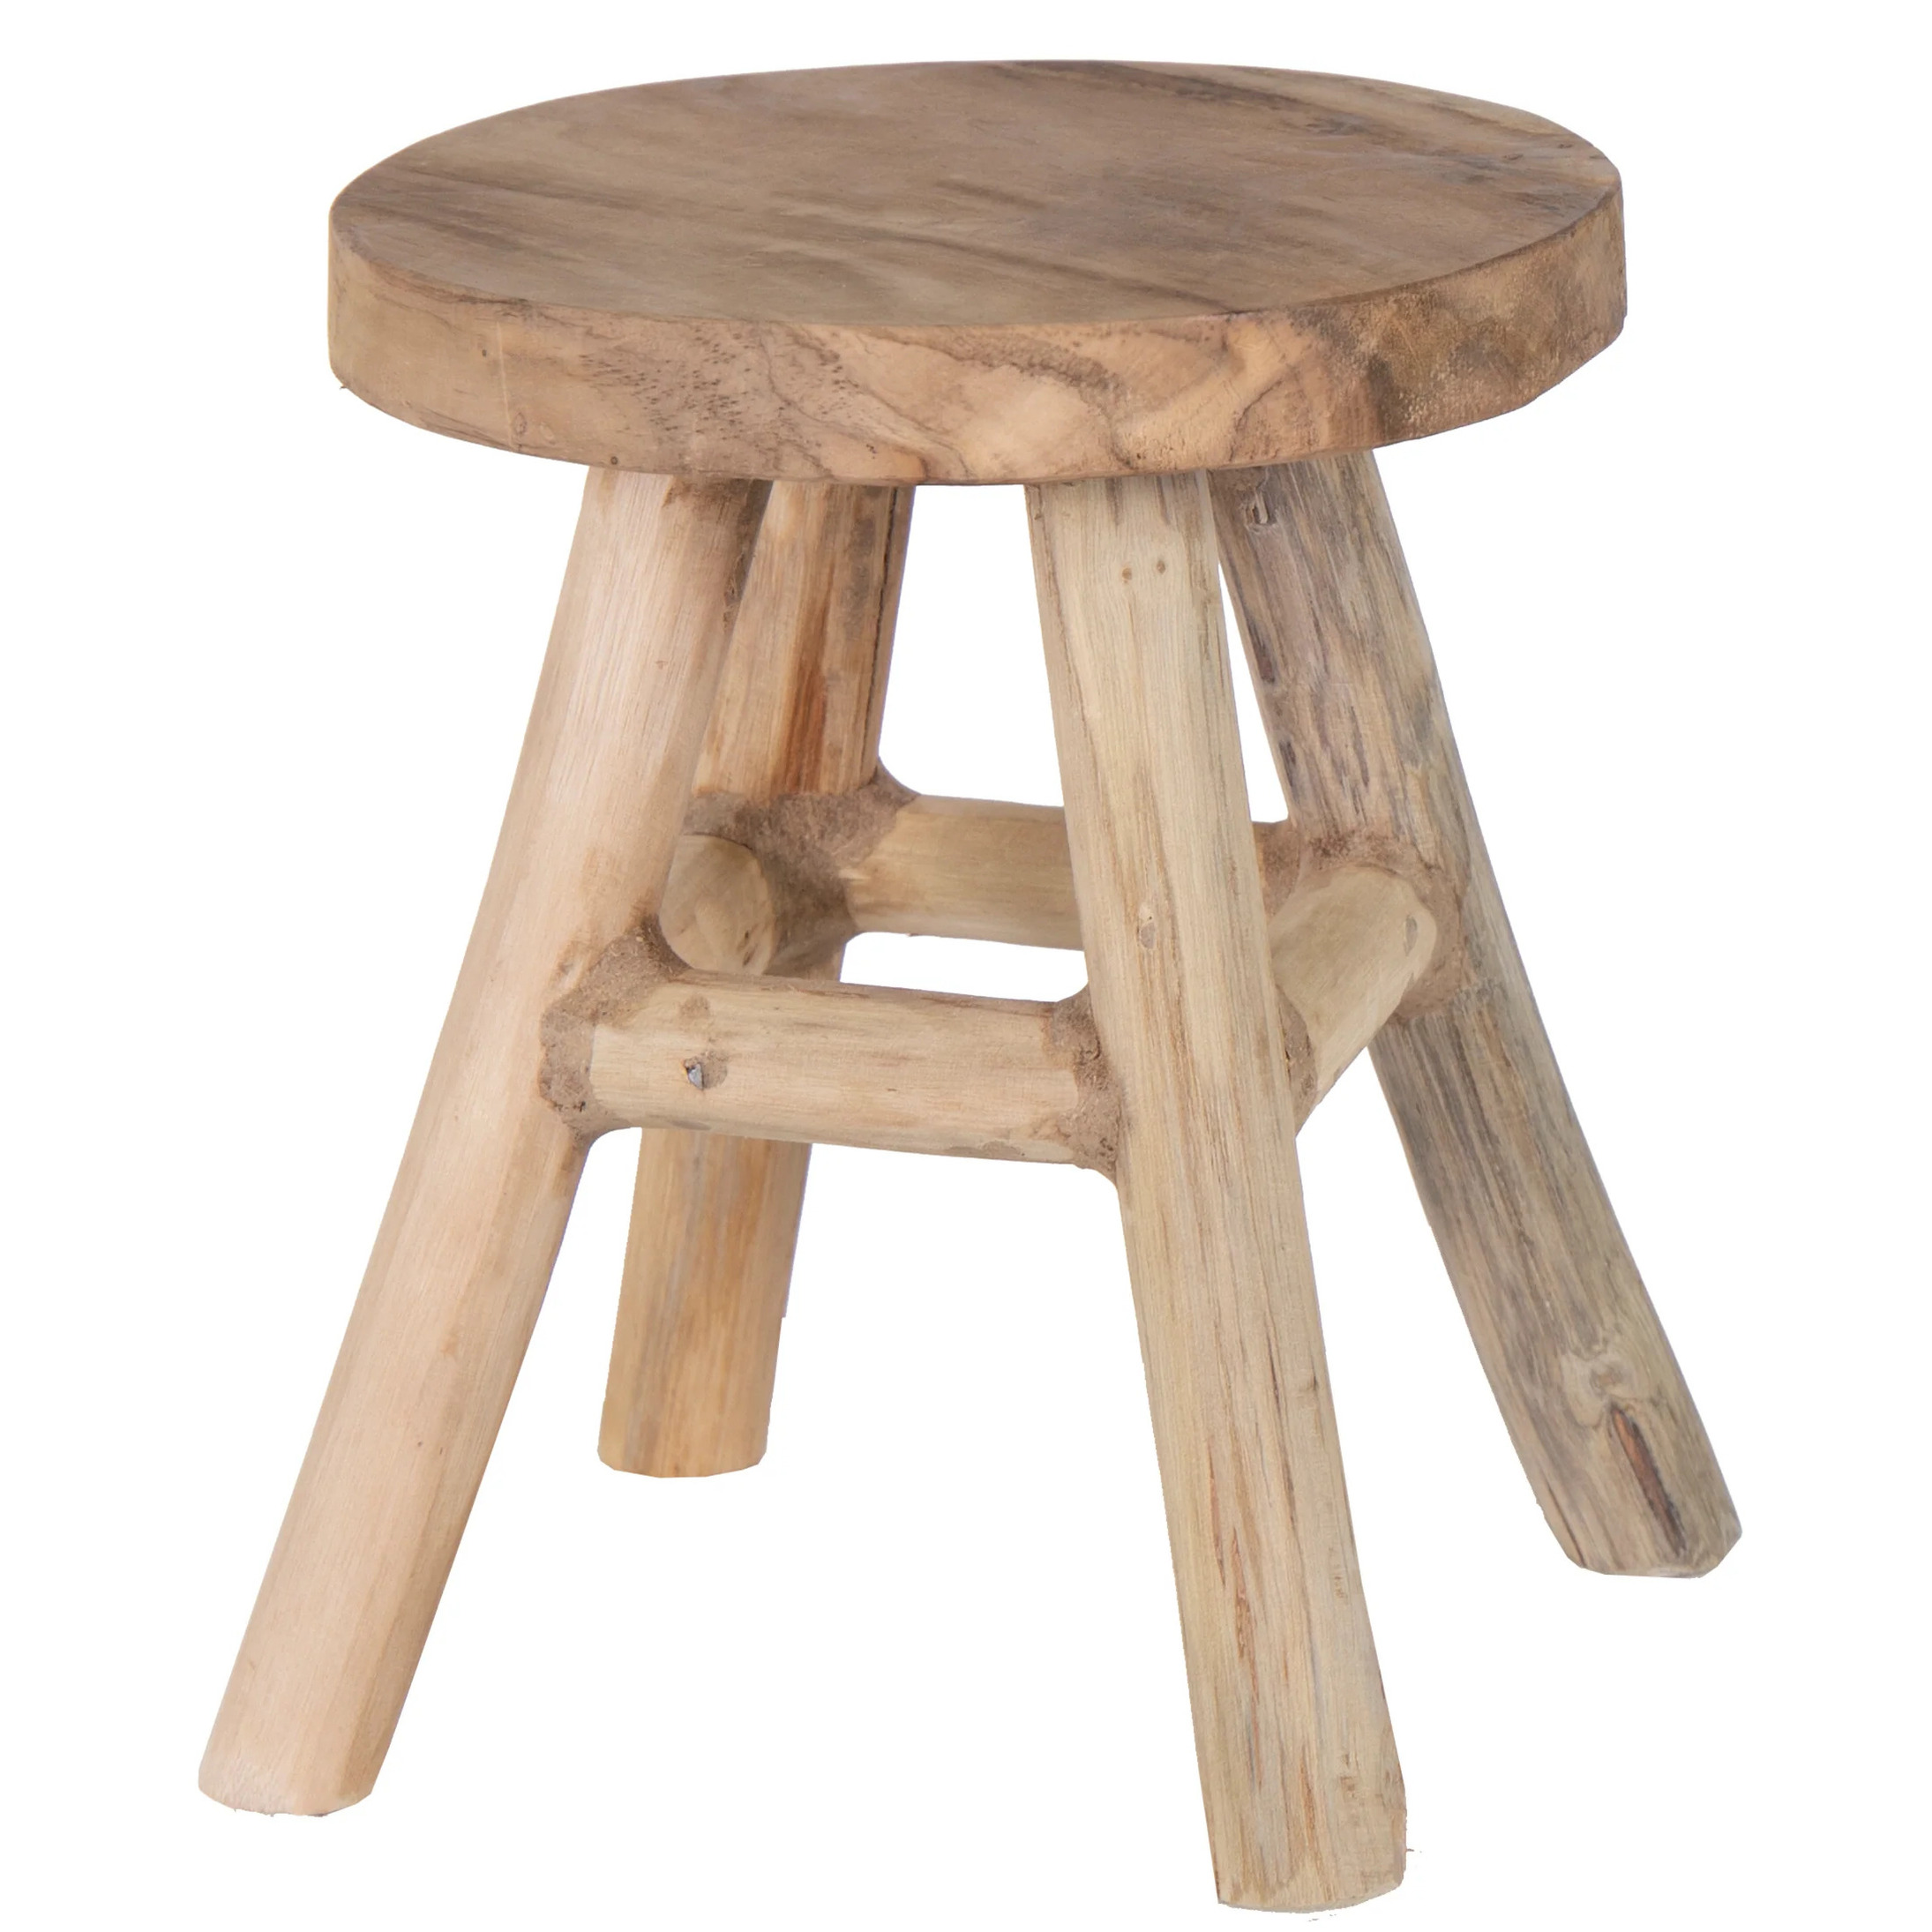 Zit krukje-bijzet stoel teak hout lichtbruin D20 x H25 cm Voor kinderen